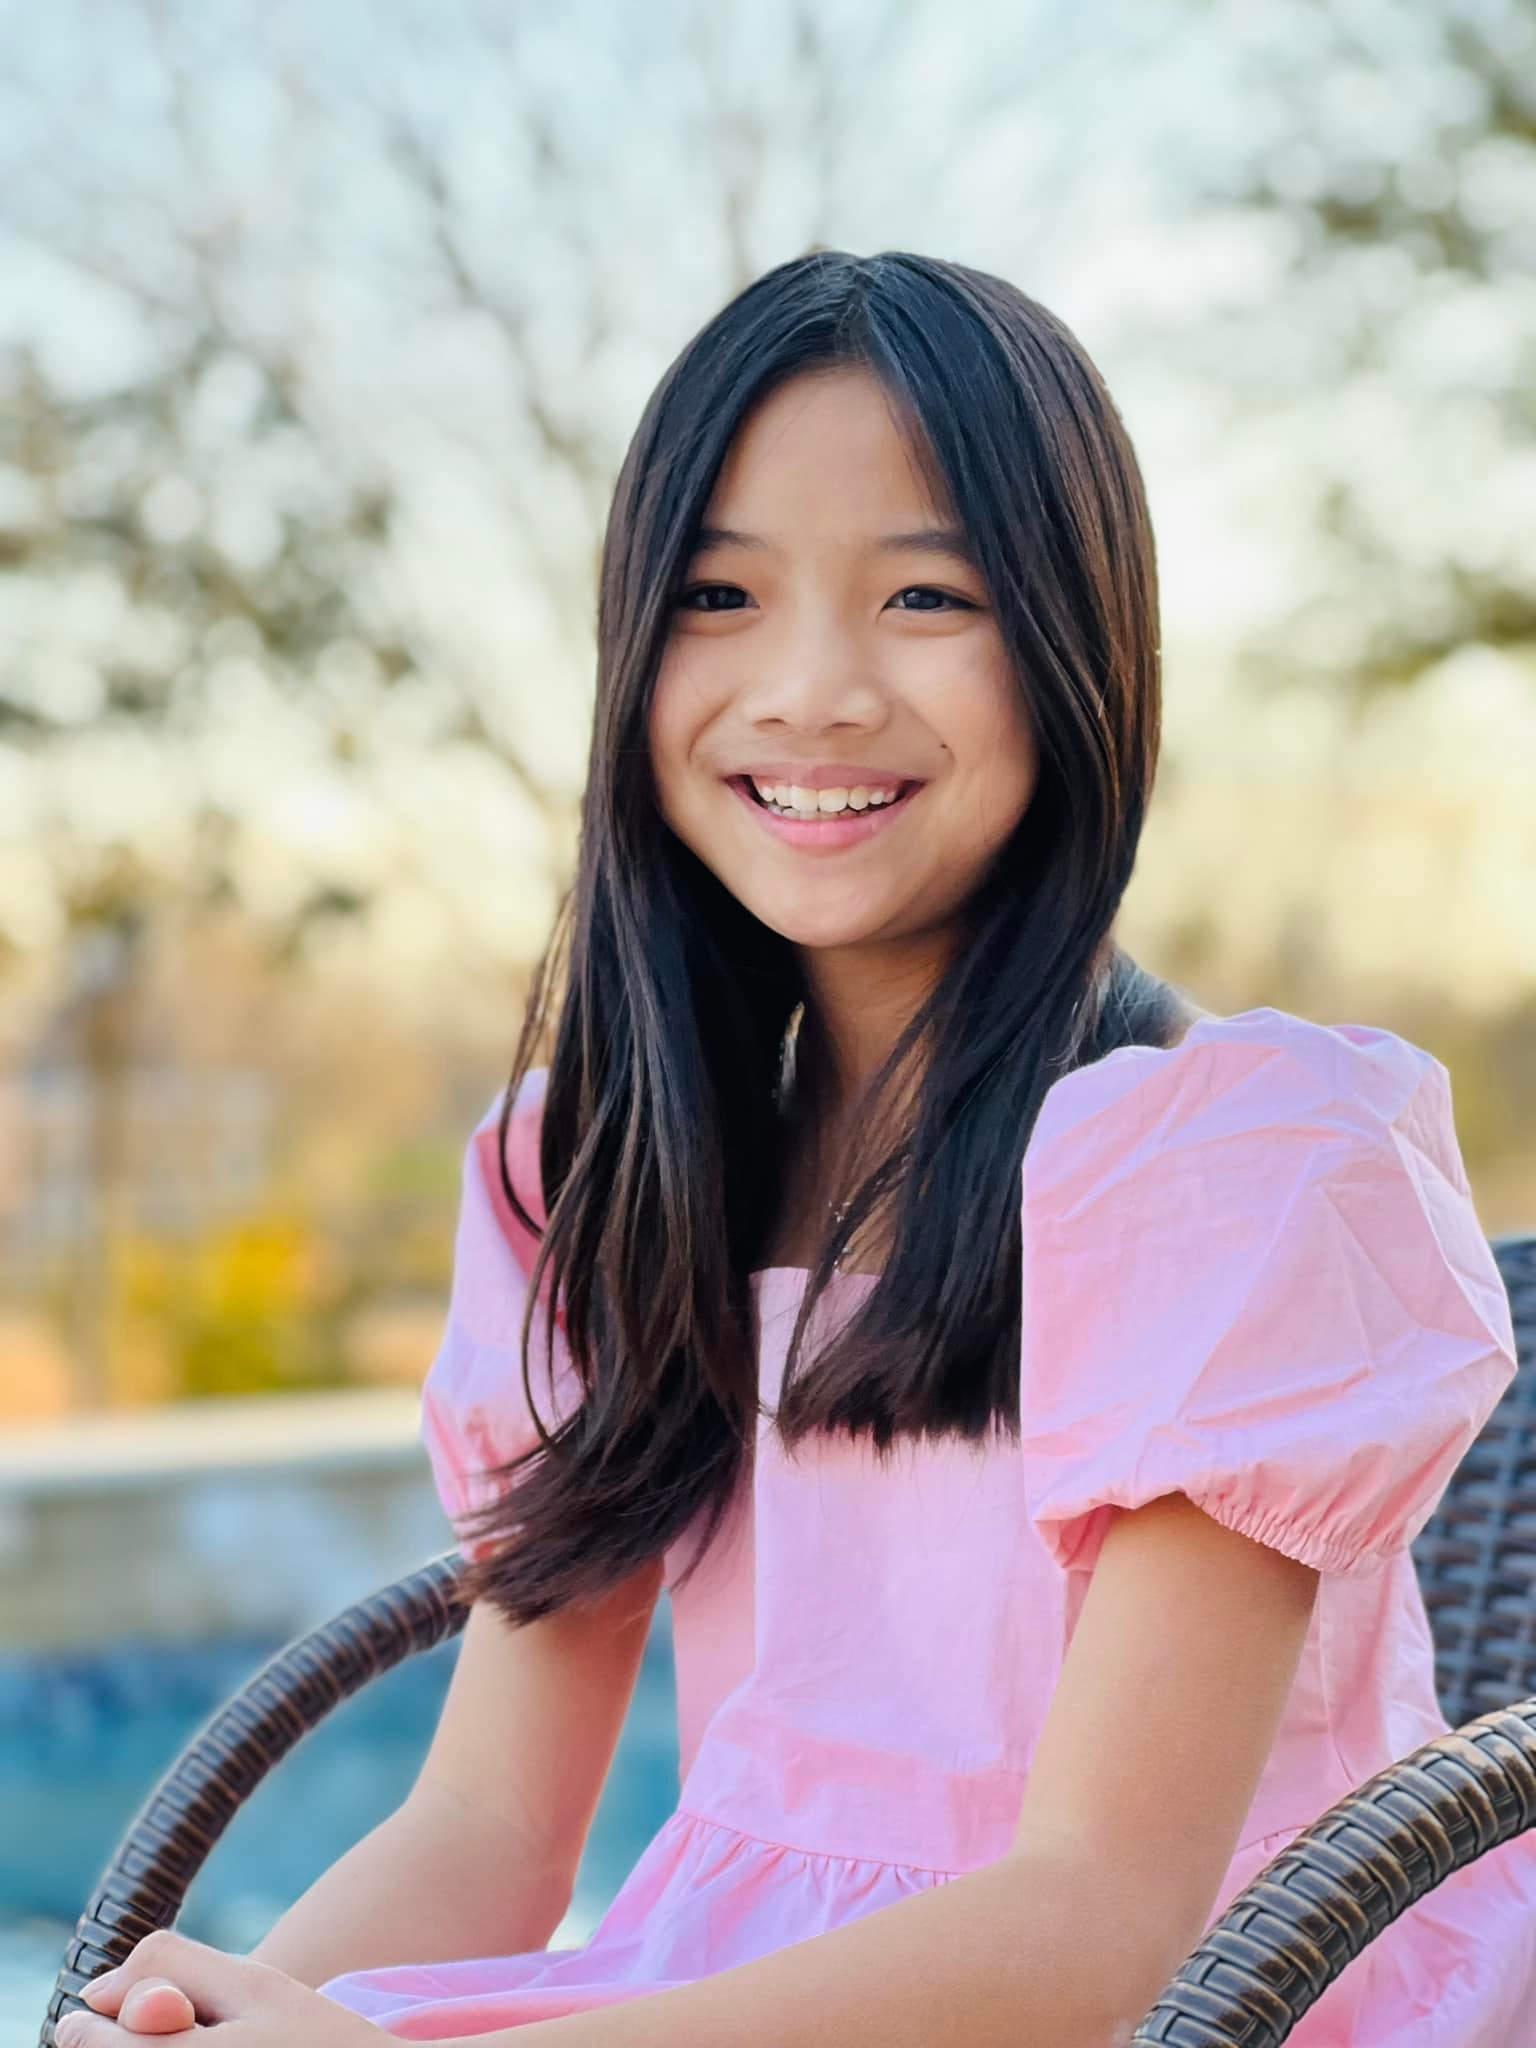 Nhan sắc đáng kinh ngạc của con gái 10 tuổi nhà ca sĩ Hồng Ngọc - Ảnh 2